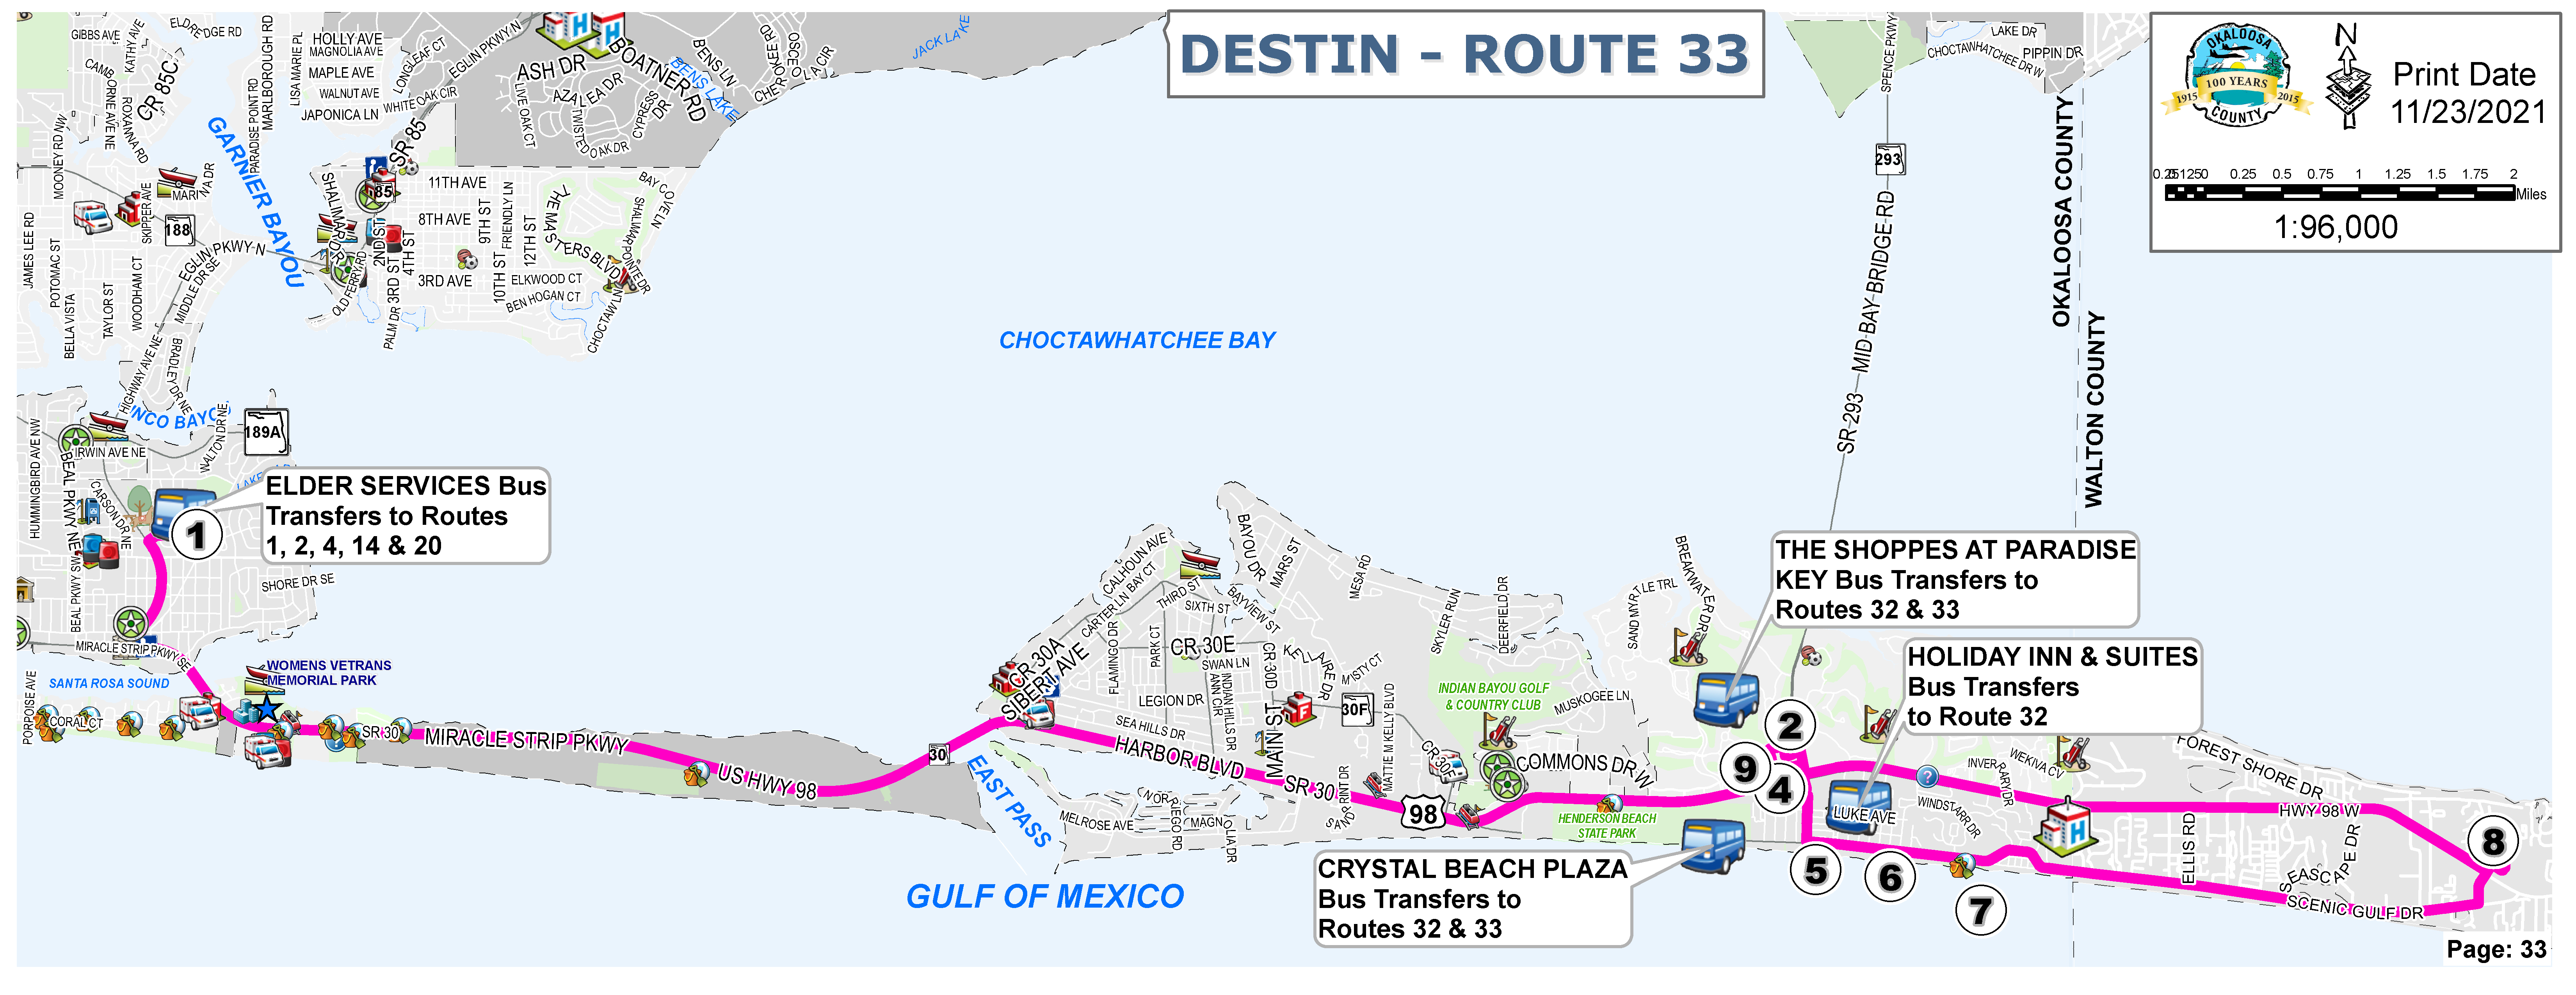 Destin Route 33